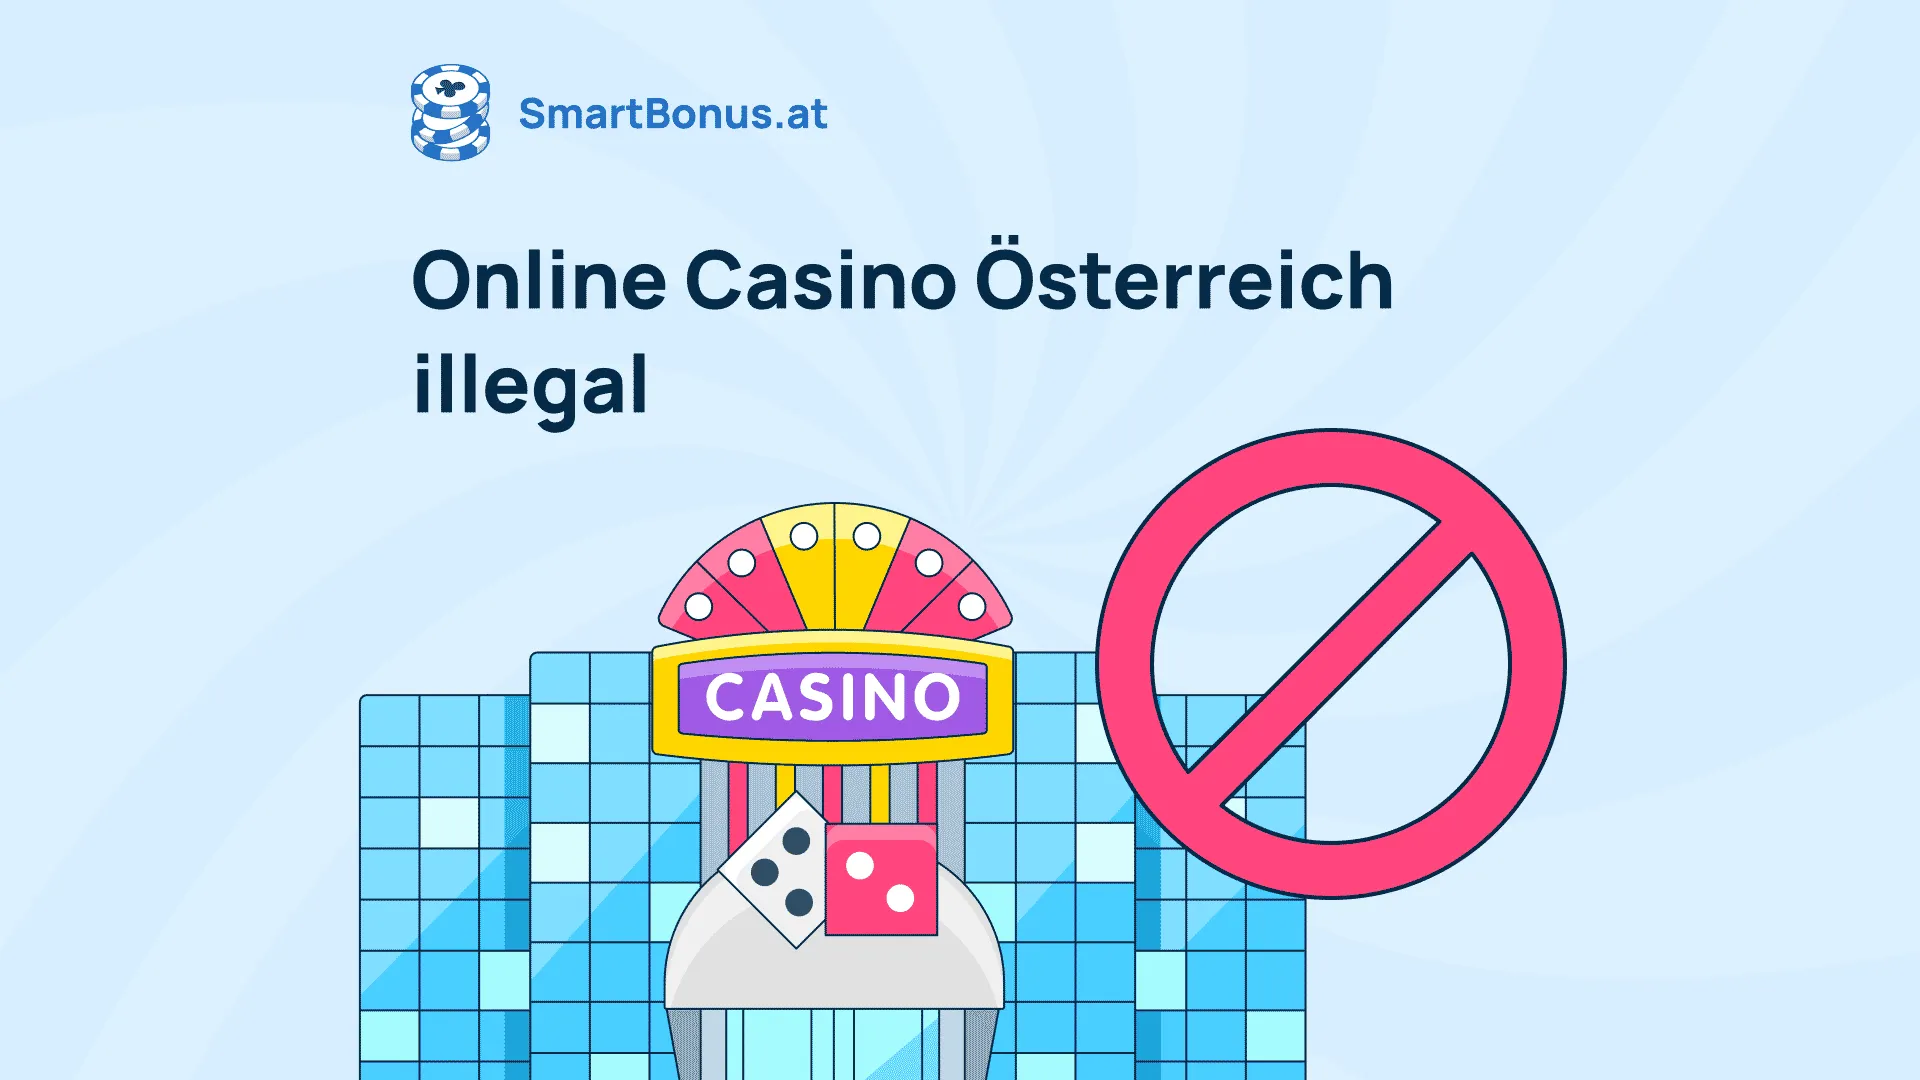 Jetzt können Sie Ihr neue online casinos sicher erstellen lassen